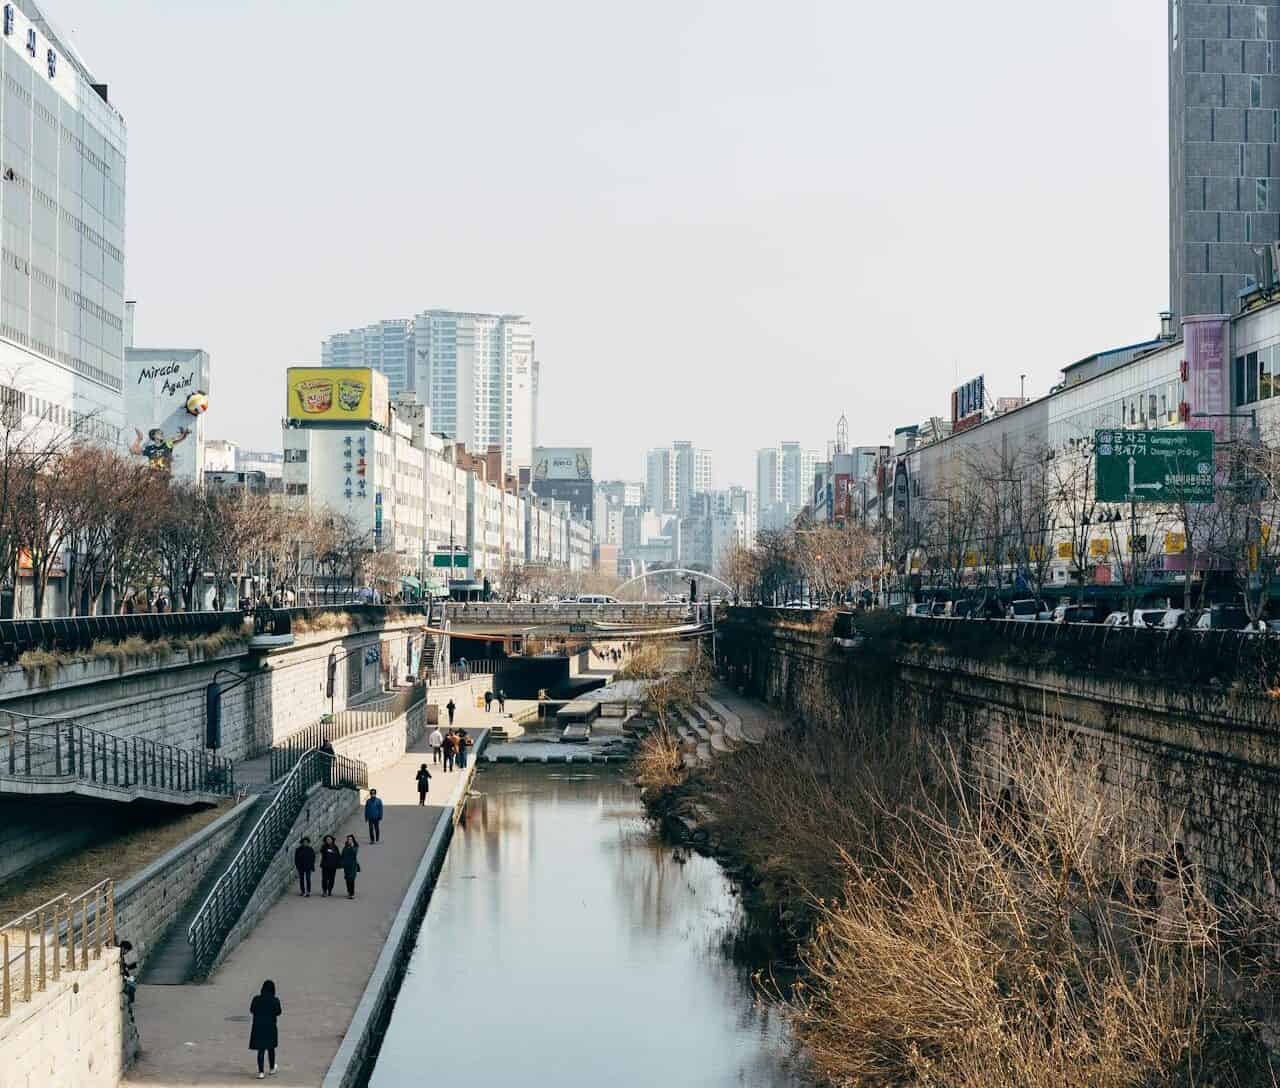 River in Seoul, Korea.